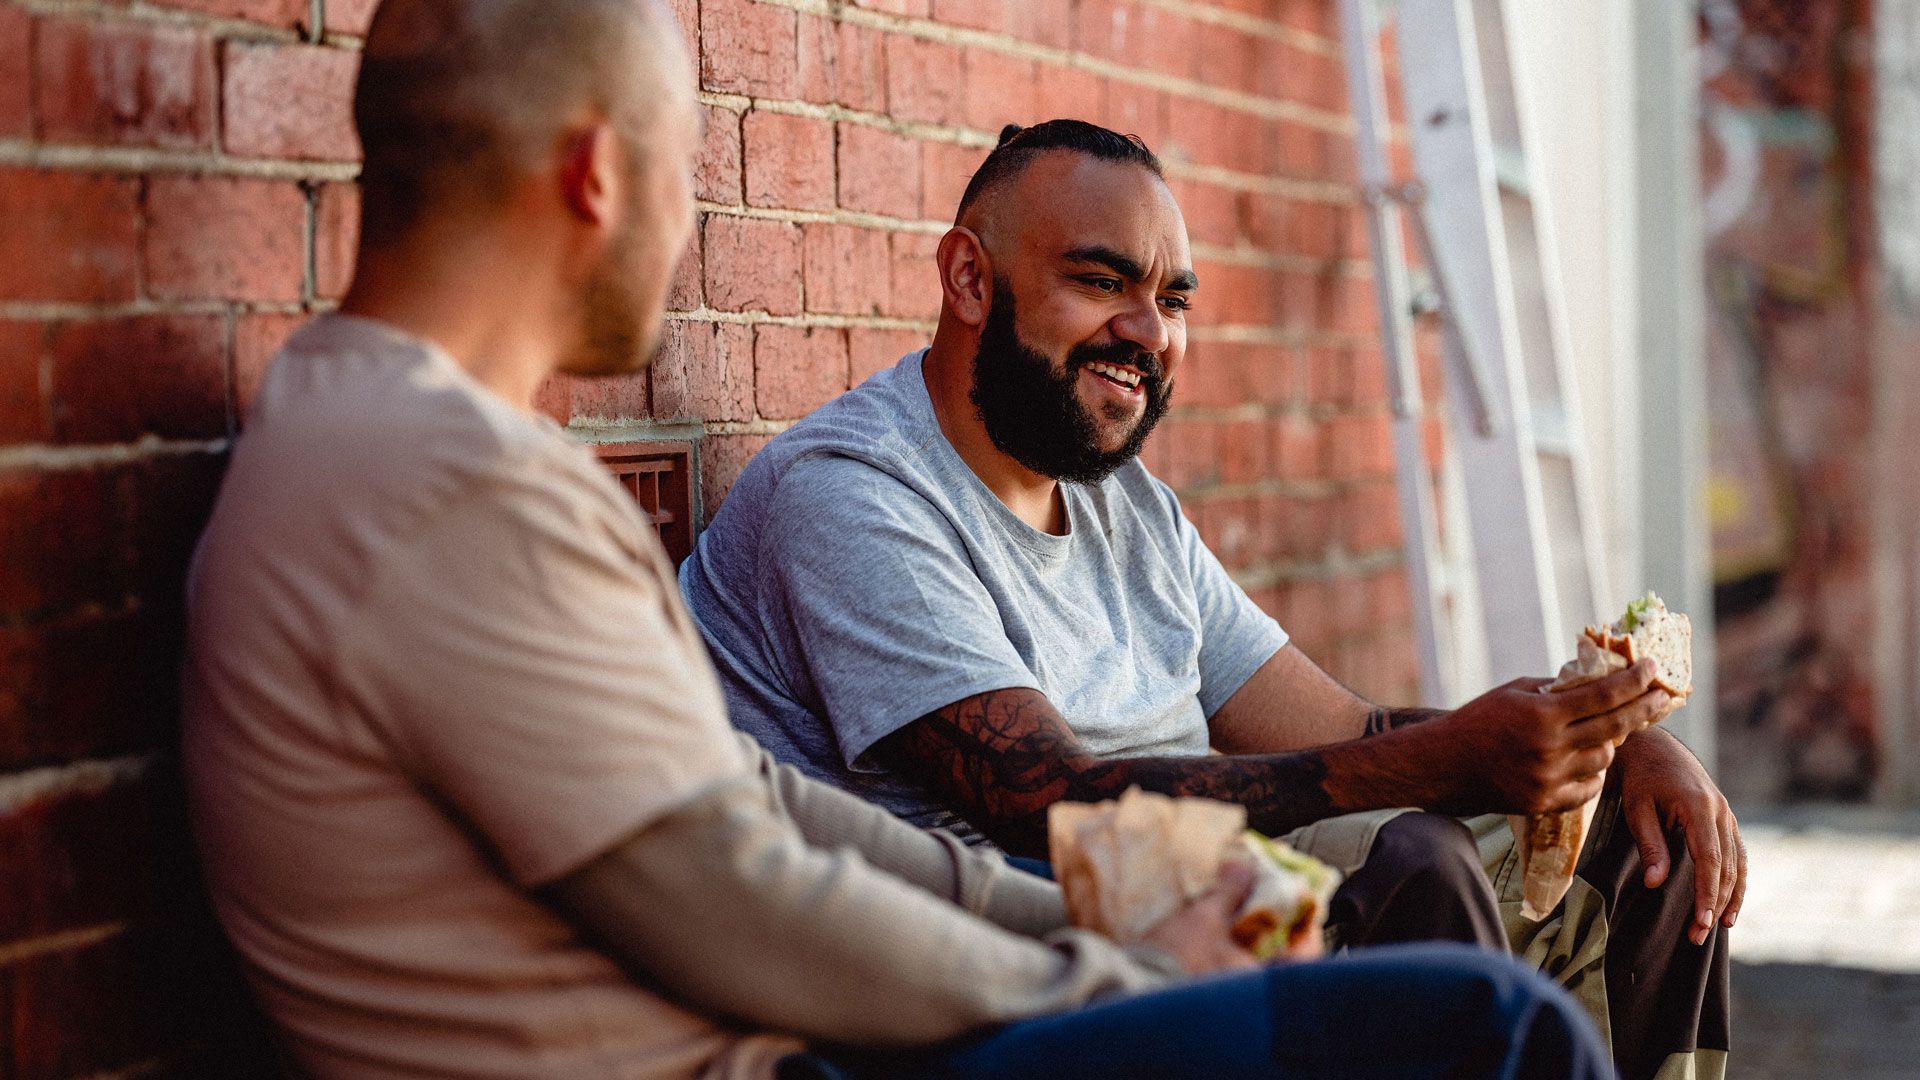 Two smiling men, sitting in a laneway while enjoying their lunchbreak.